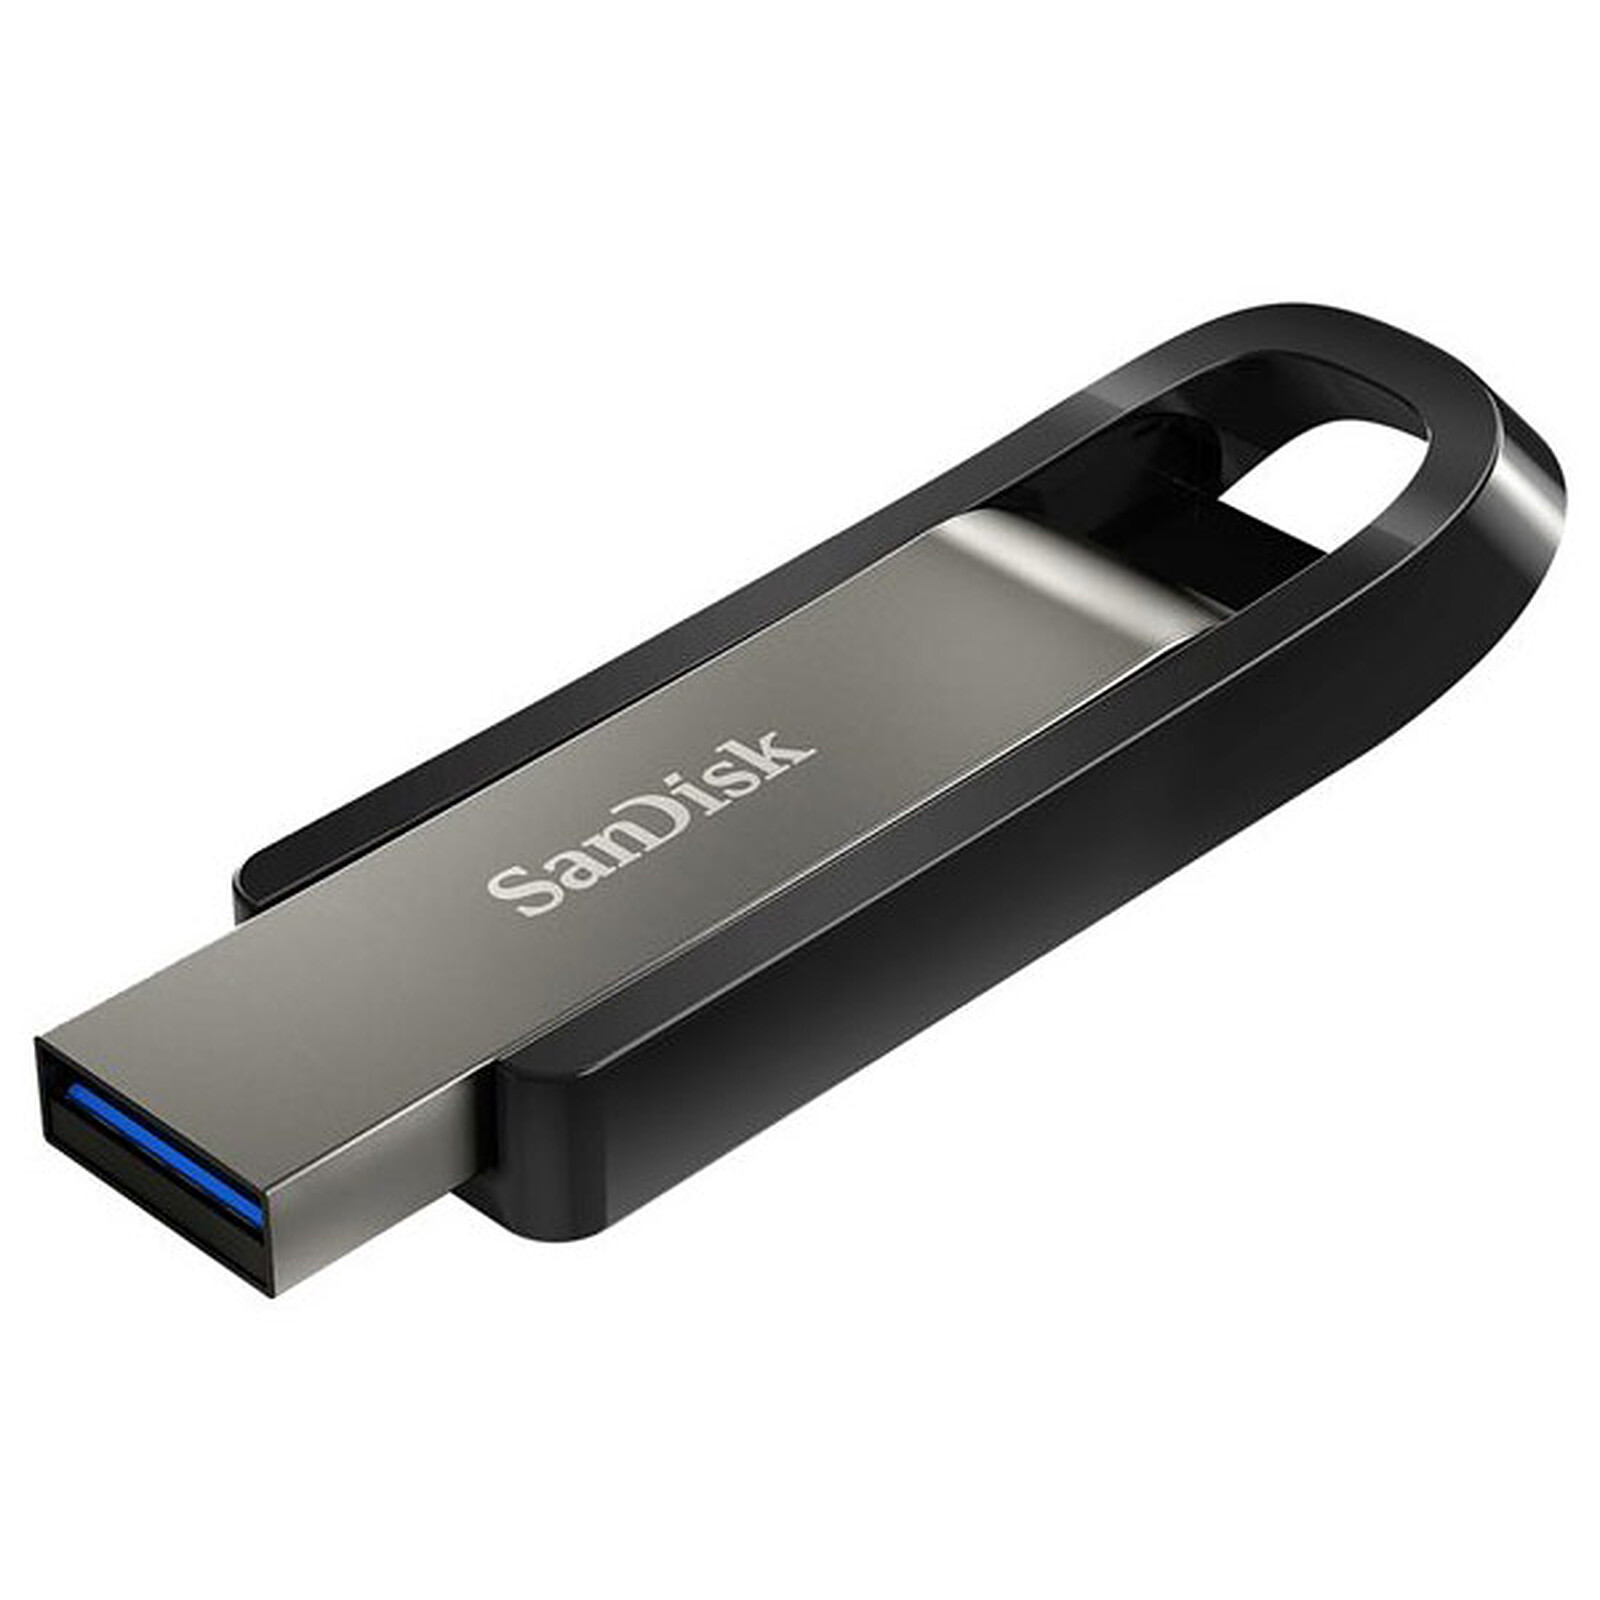 SanDisk Extreme Go USB 3.0 64 GB - USB Sandisk en LDLC